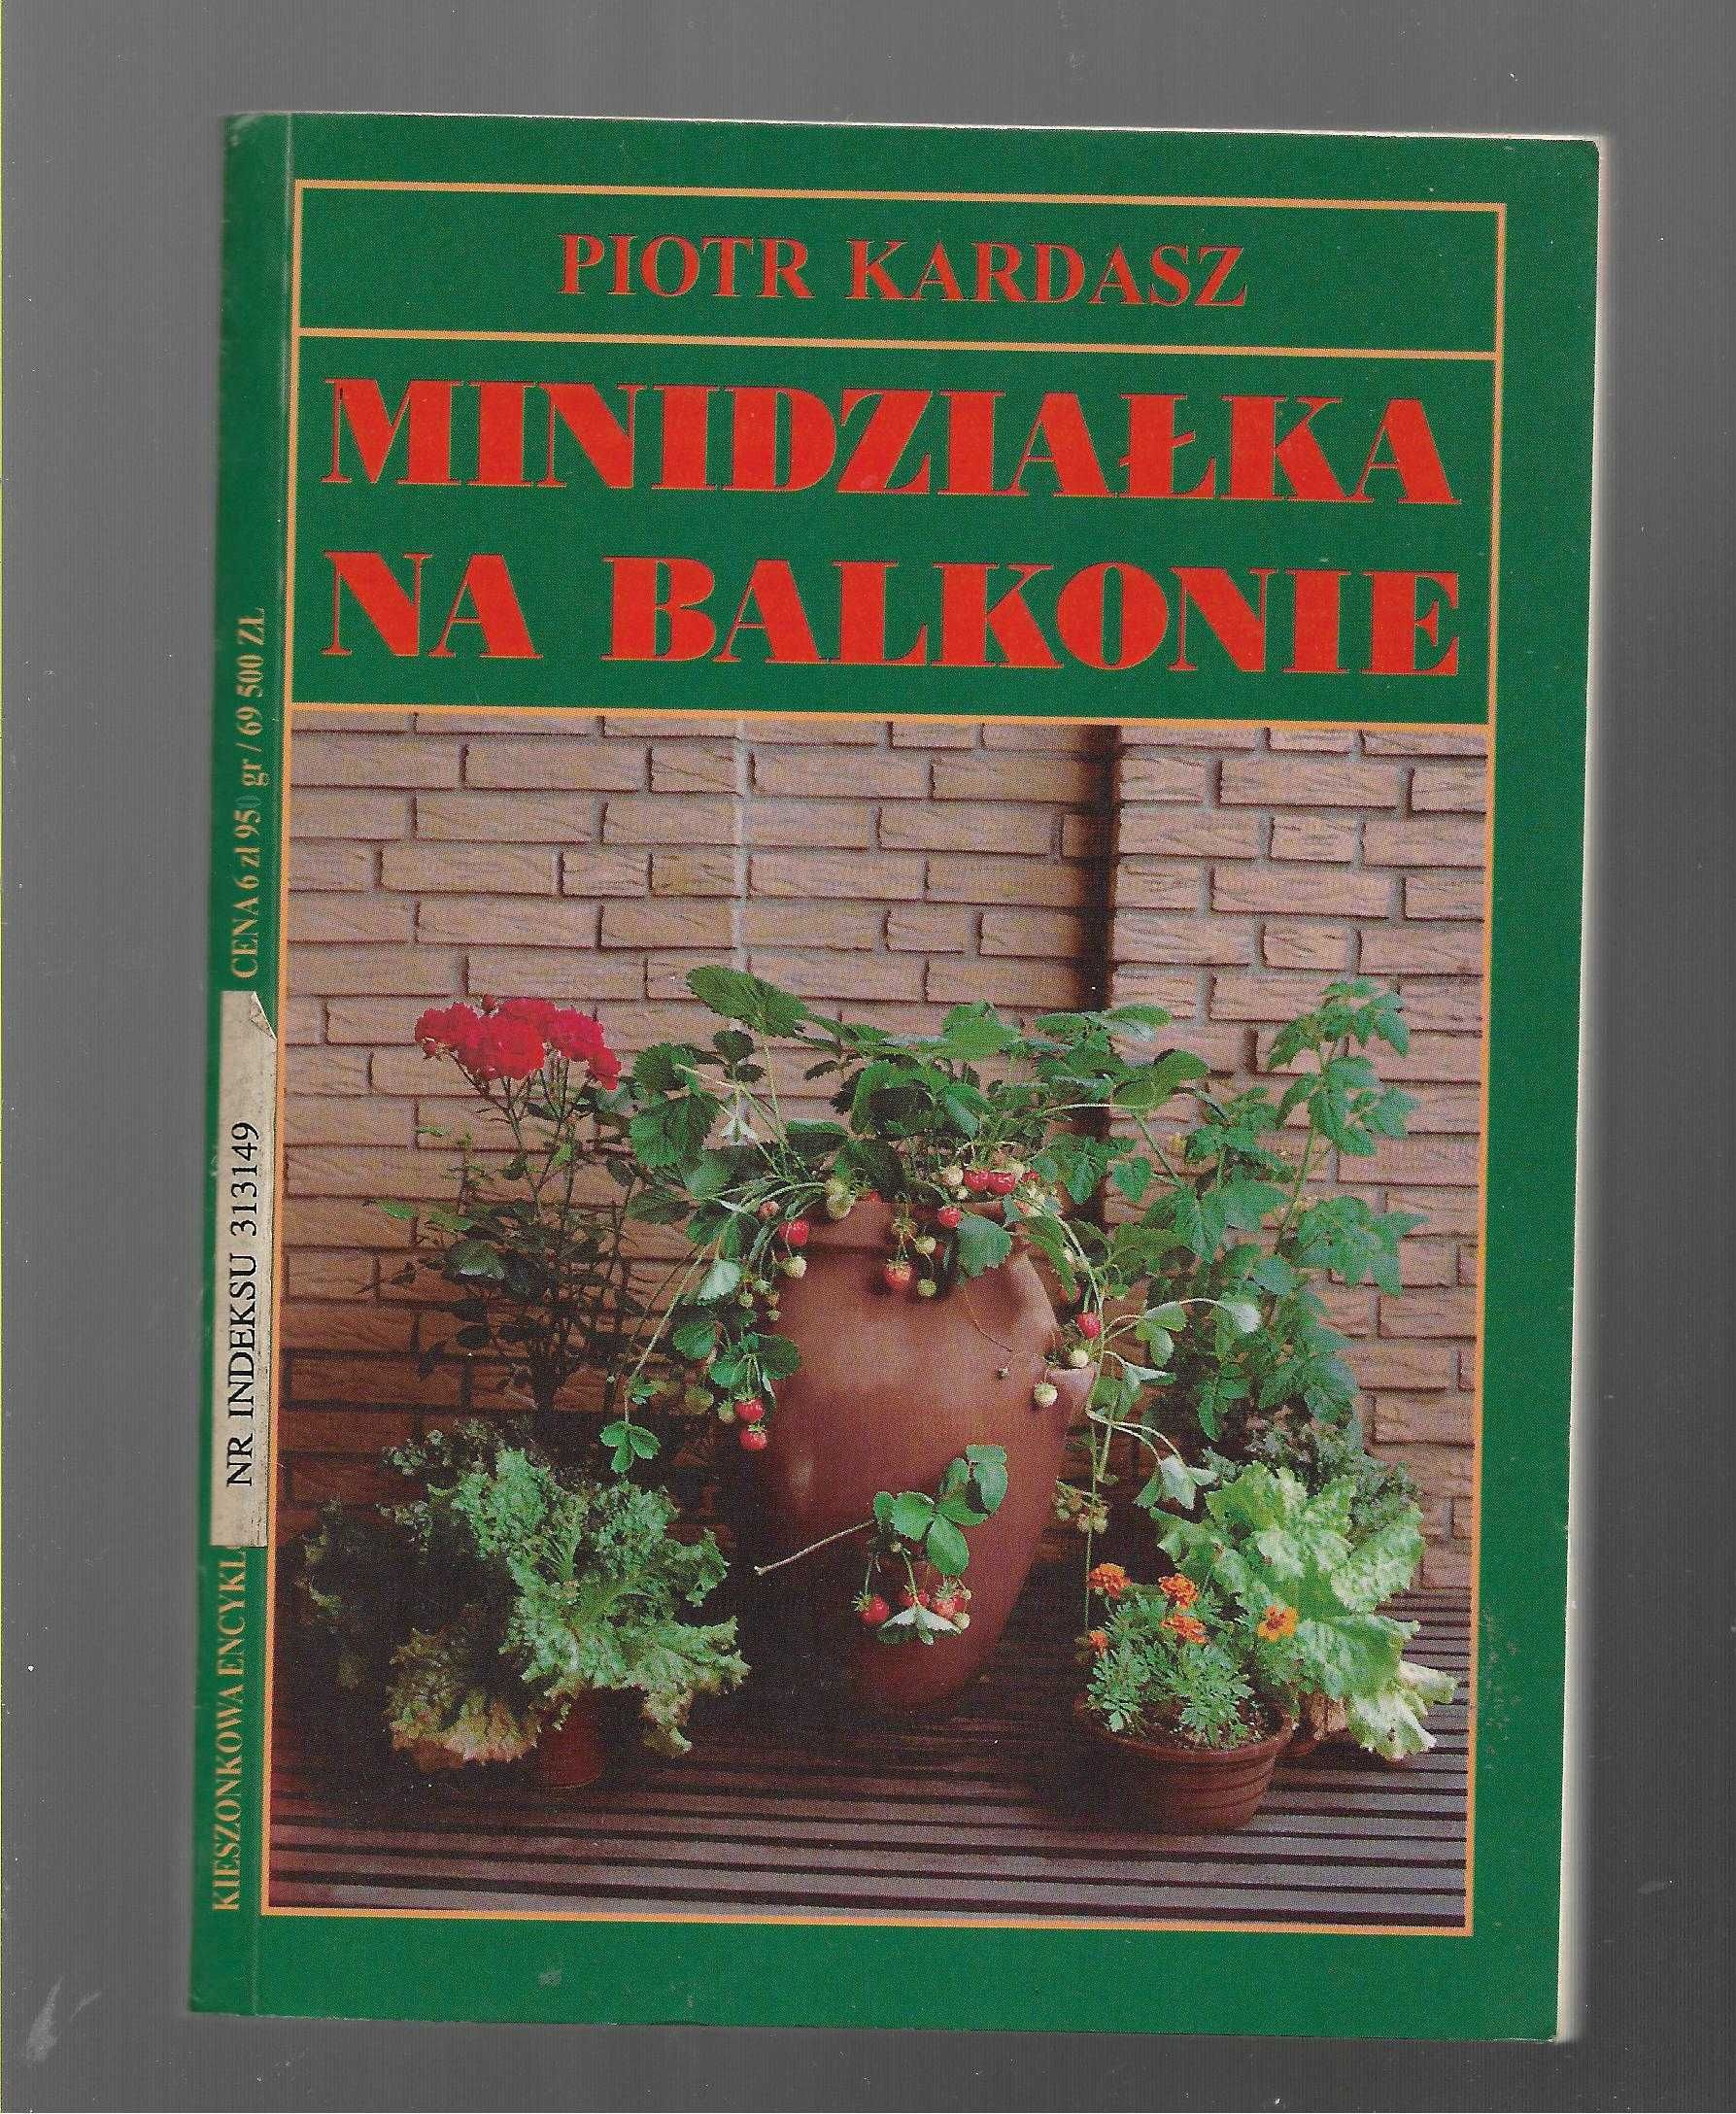 Minidziałka na balkonie Kardasz 1996